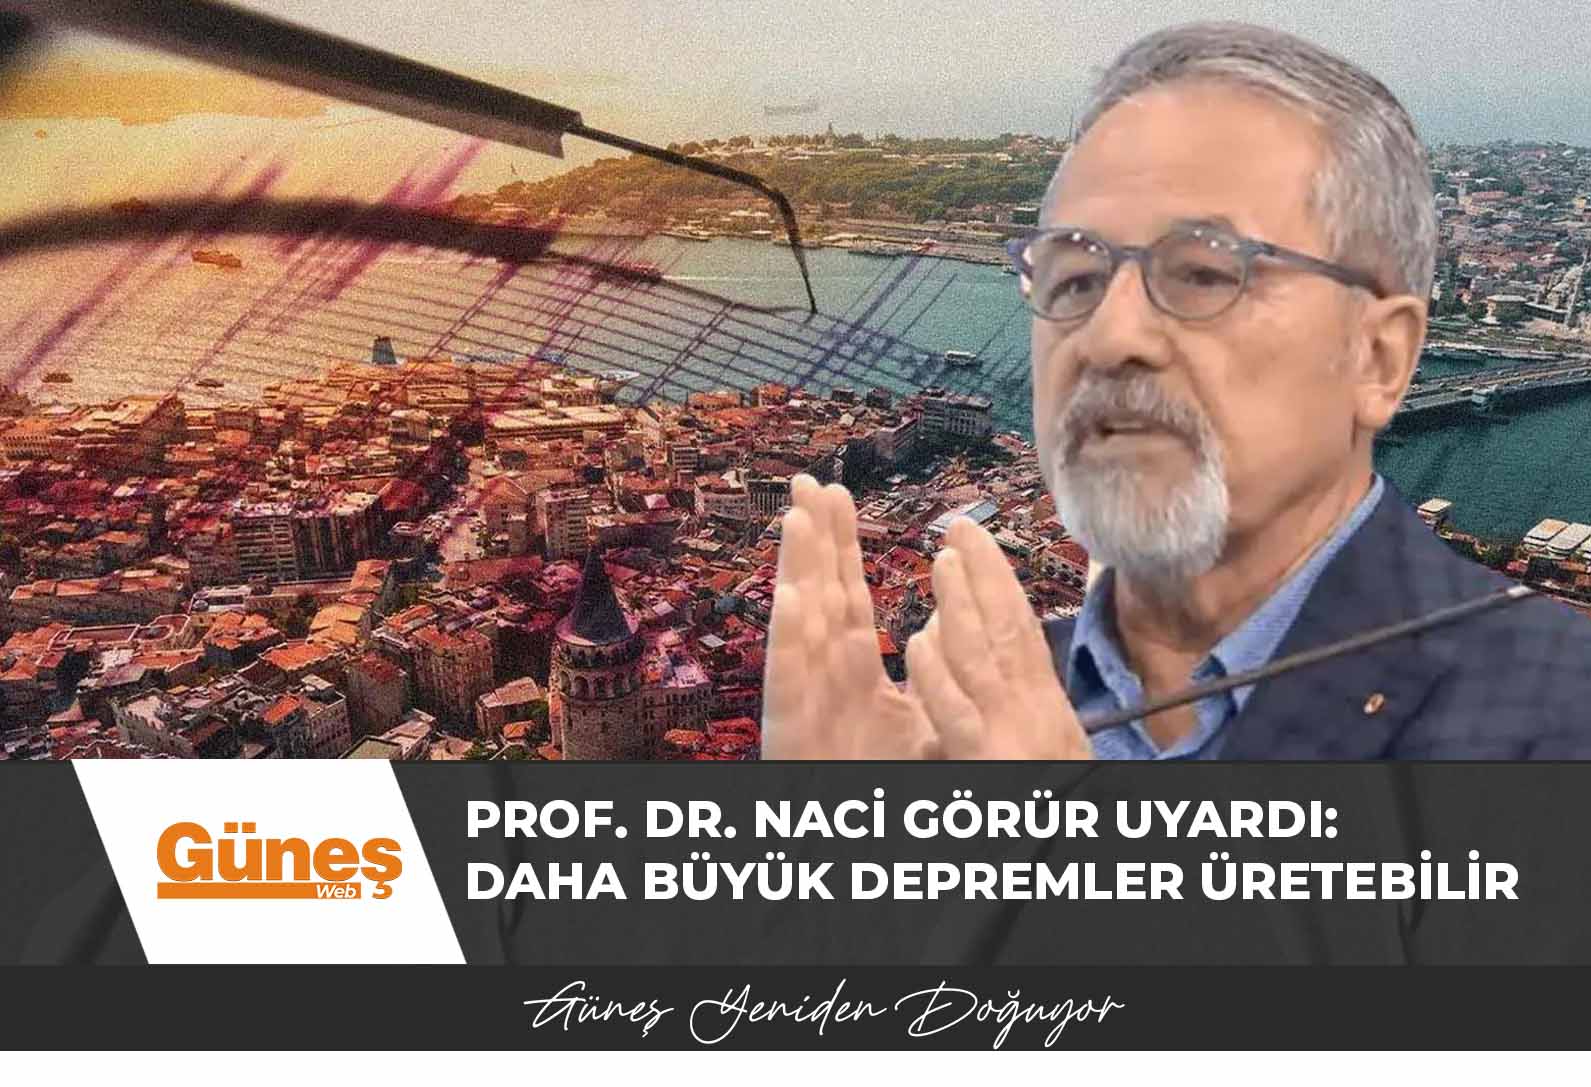 Prof. Dr. Naci Görür uyardı: Daha büyük depremler üretebilir